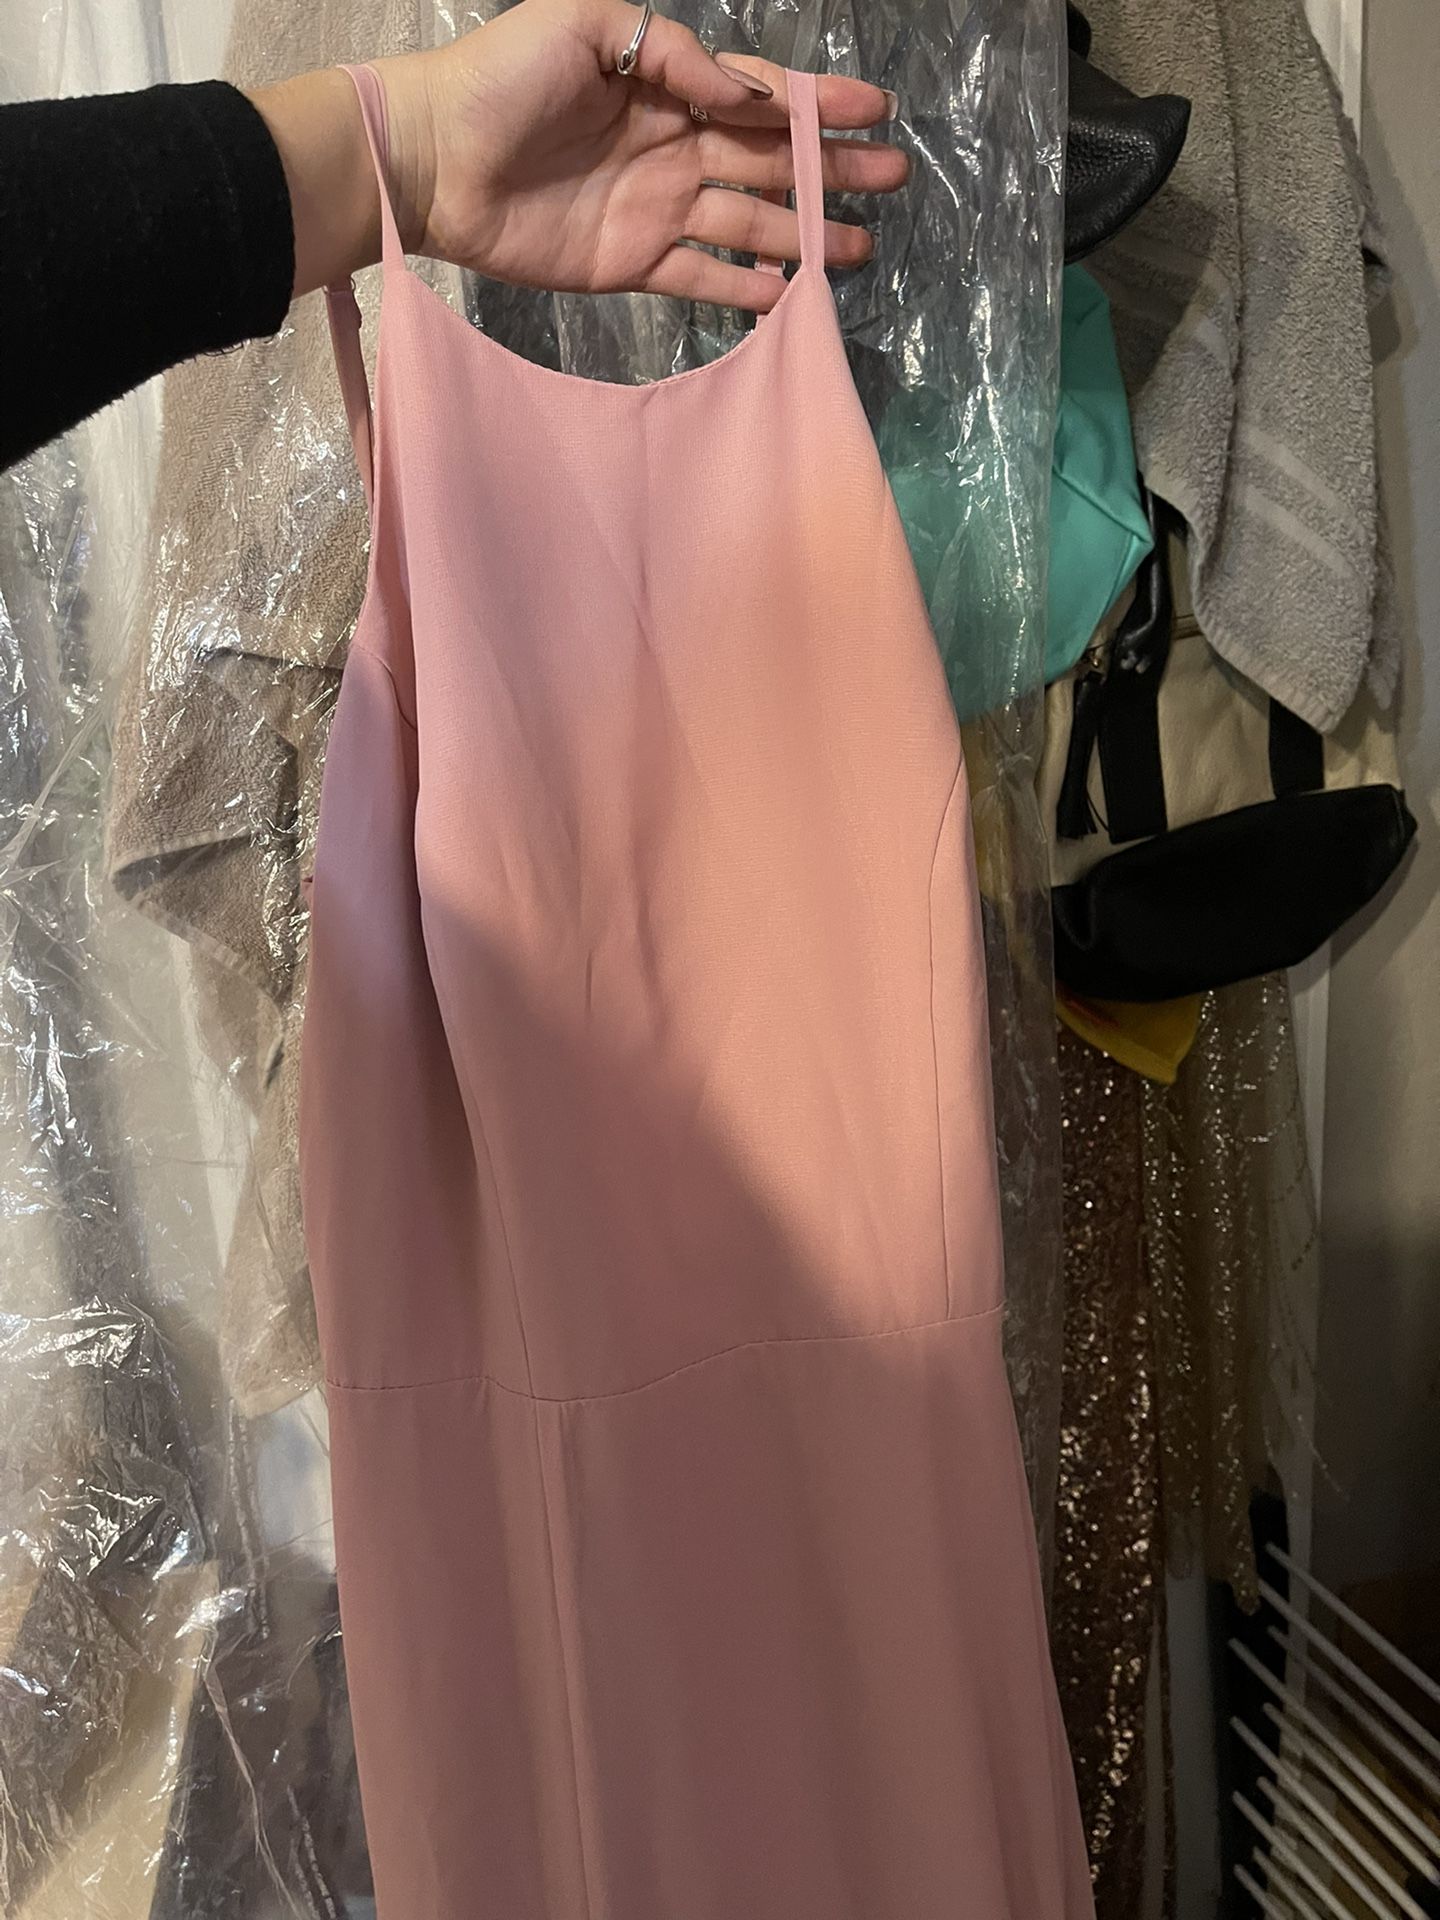 Size 8 Prom/ Flower Girl Long Dress